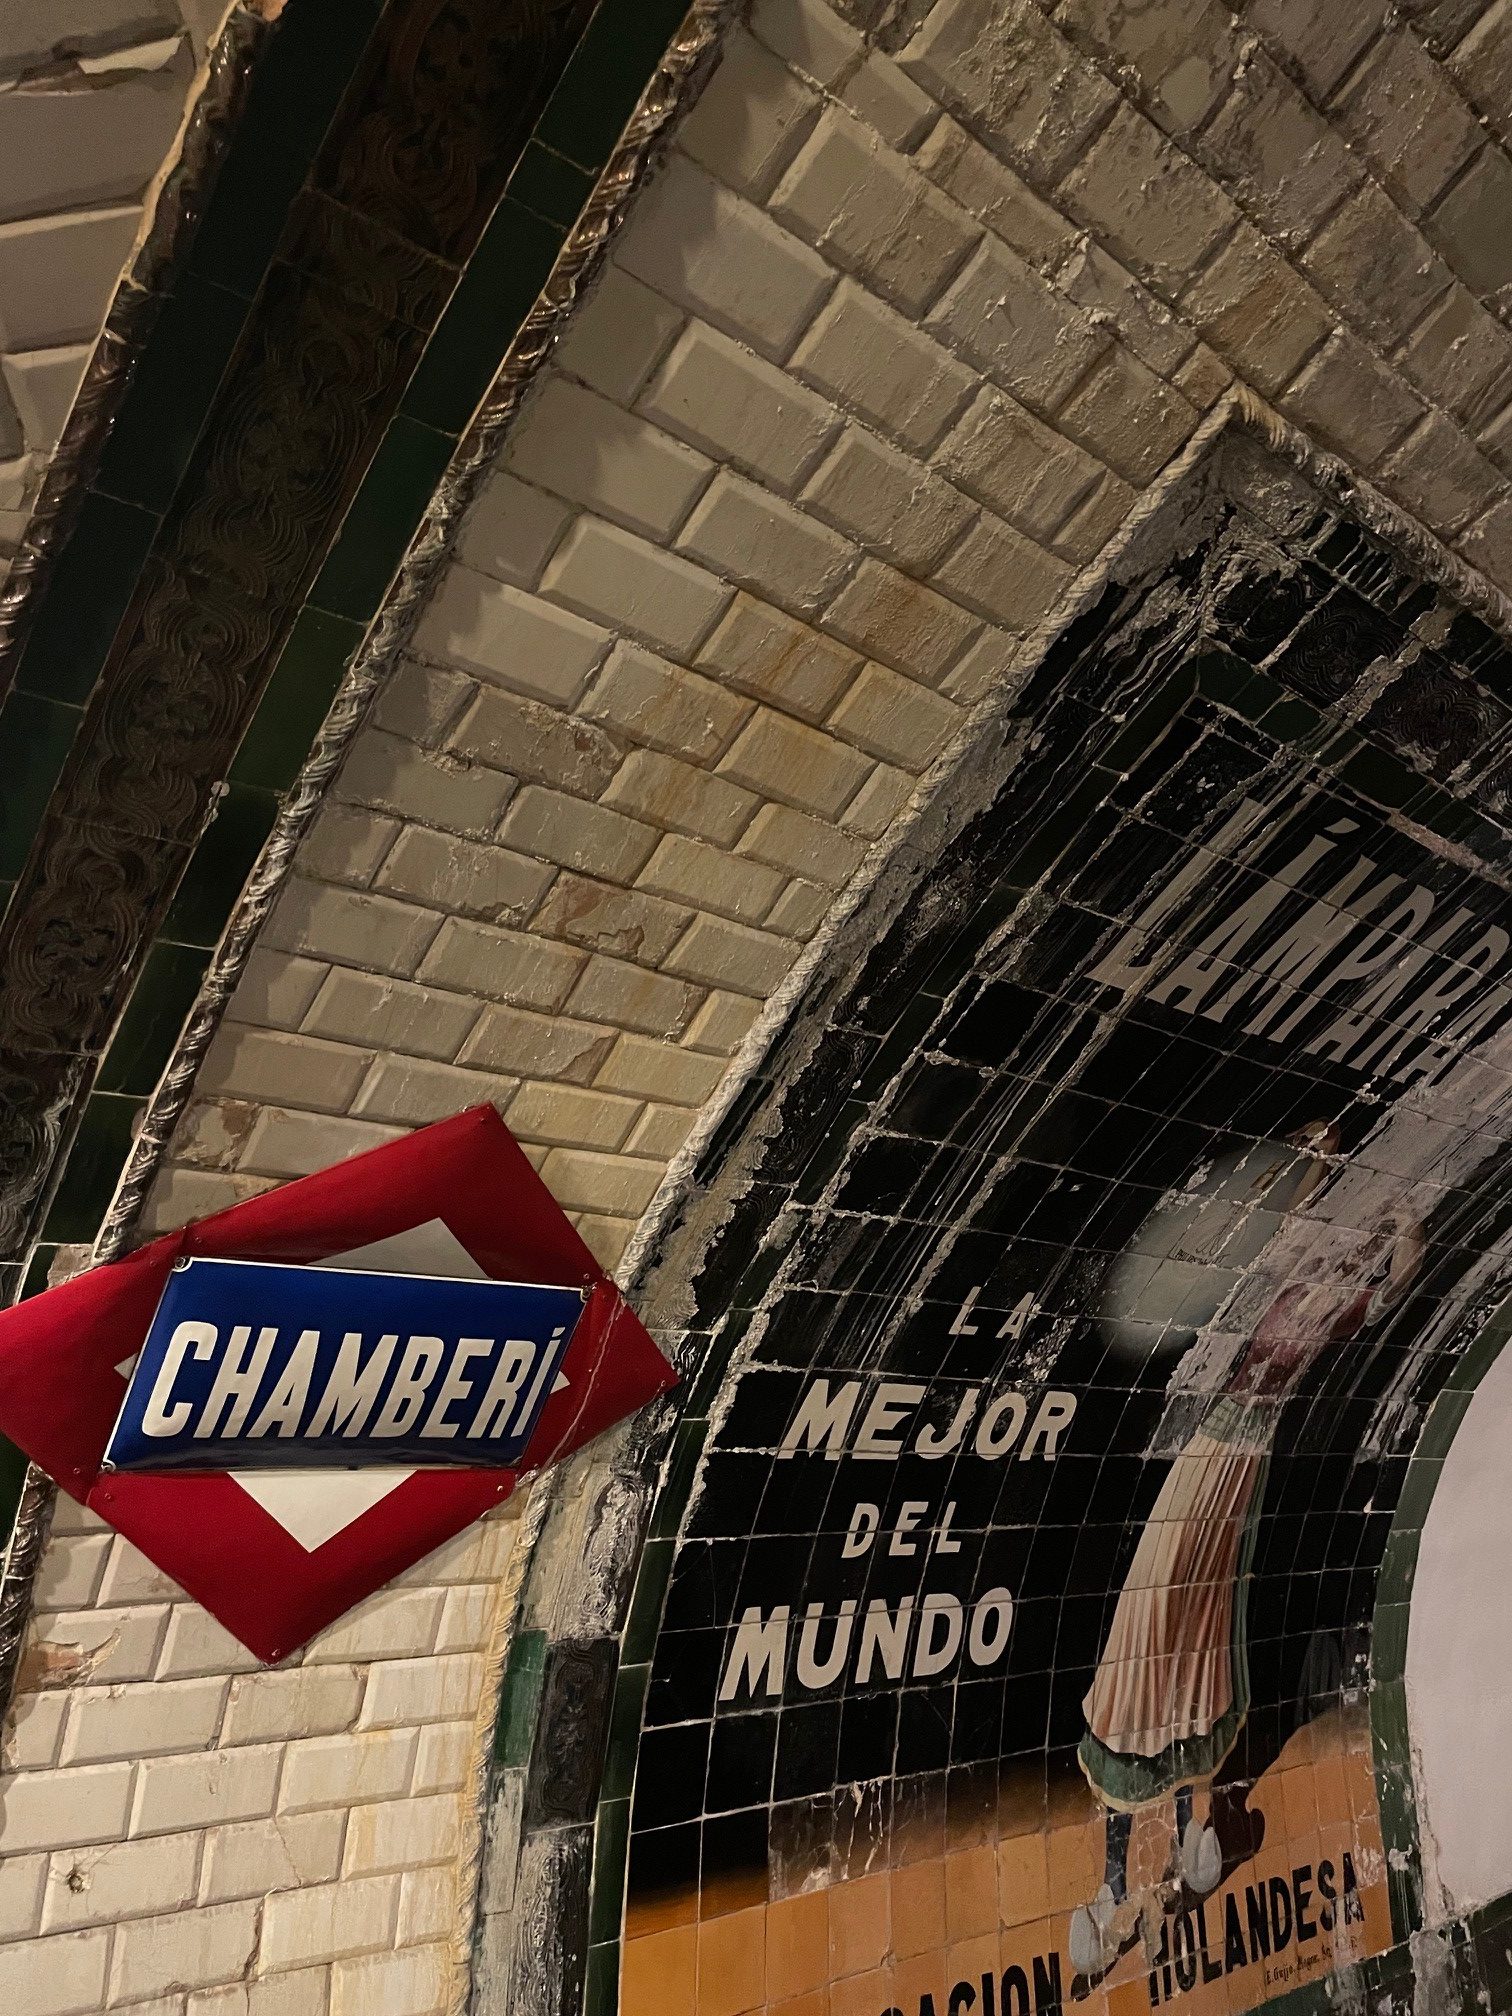 Vanhanaikaisen metroaseman selustaa. Seinässä punasinivalkoinen kyltti, jossa teksti "Chamberi" sekä vanhanaikainen mainoskuva. 